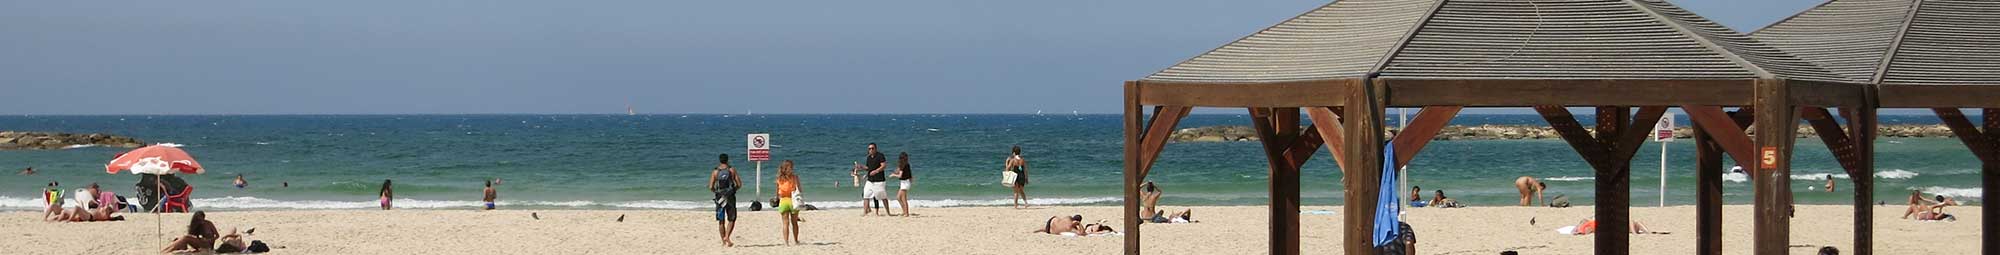 Profitez d'un séjour a Tel Aviv et découvrez bien plus que ses plages ensoleillées